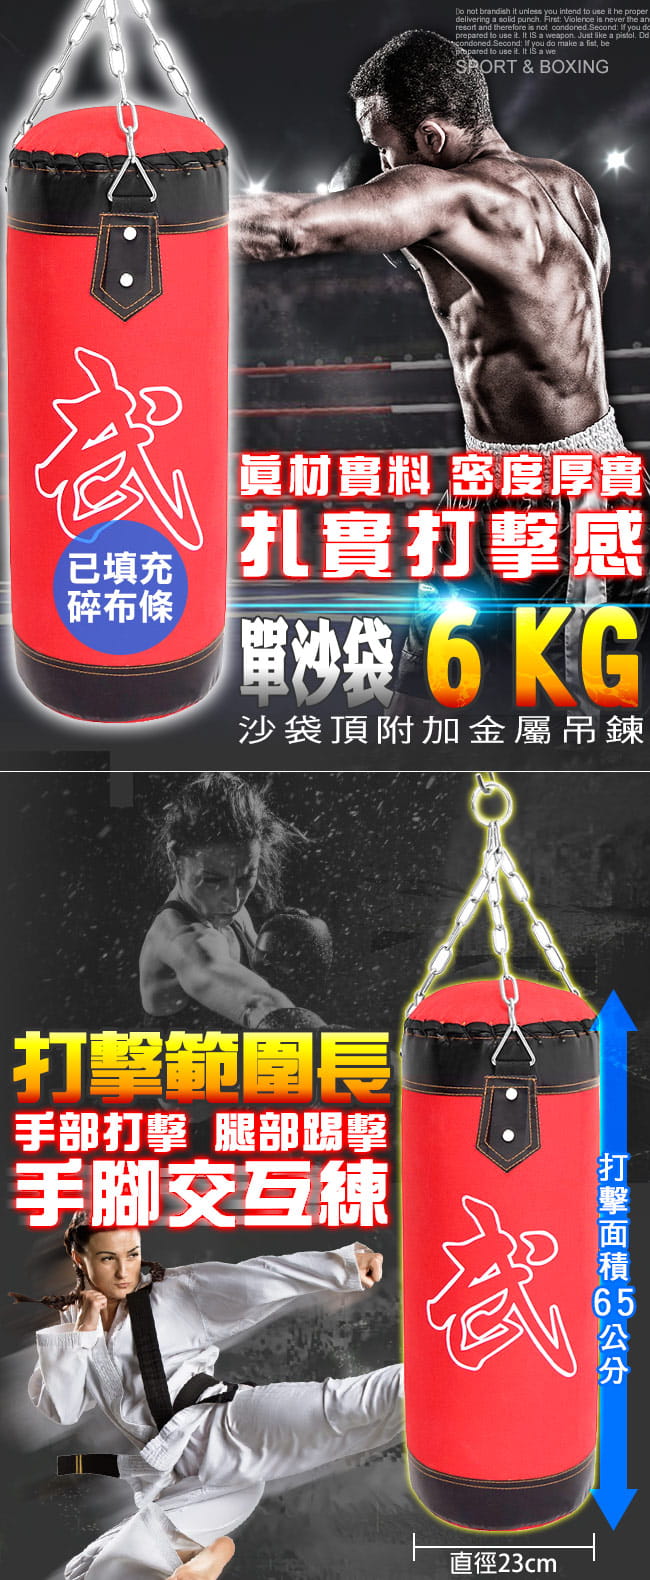 6KG拳擊沙包(已填充) 懸吊式拳擊袋沙包袋 懸掛6公斤沙袋 2